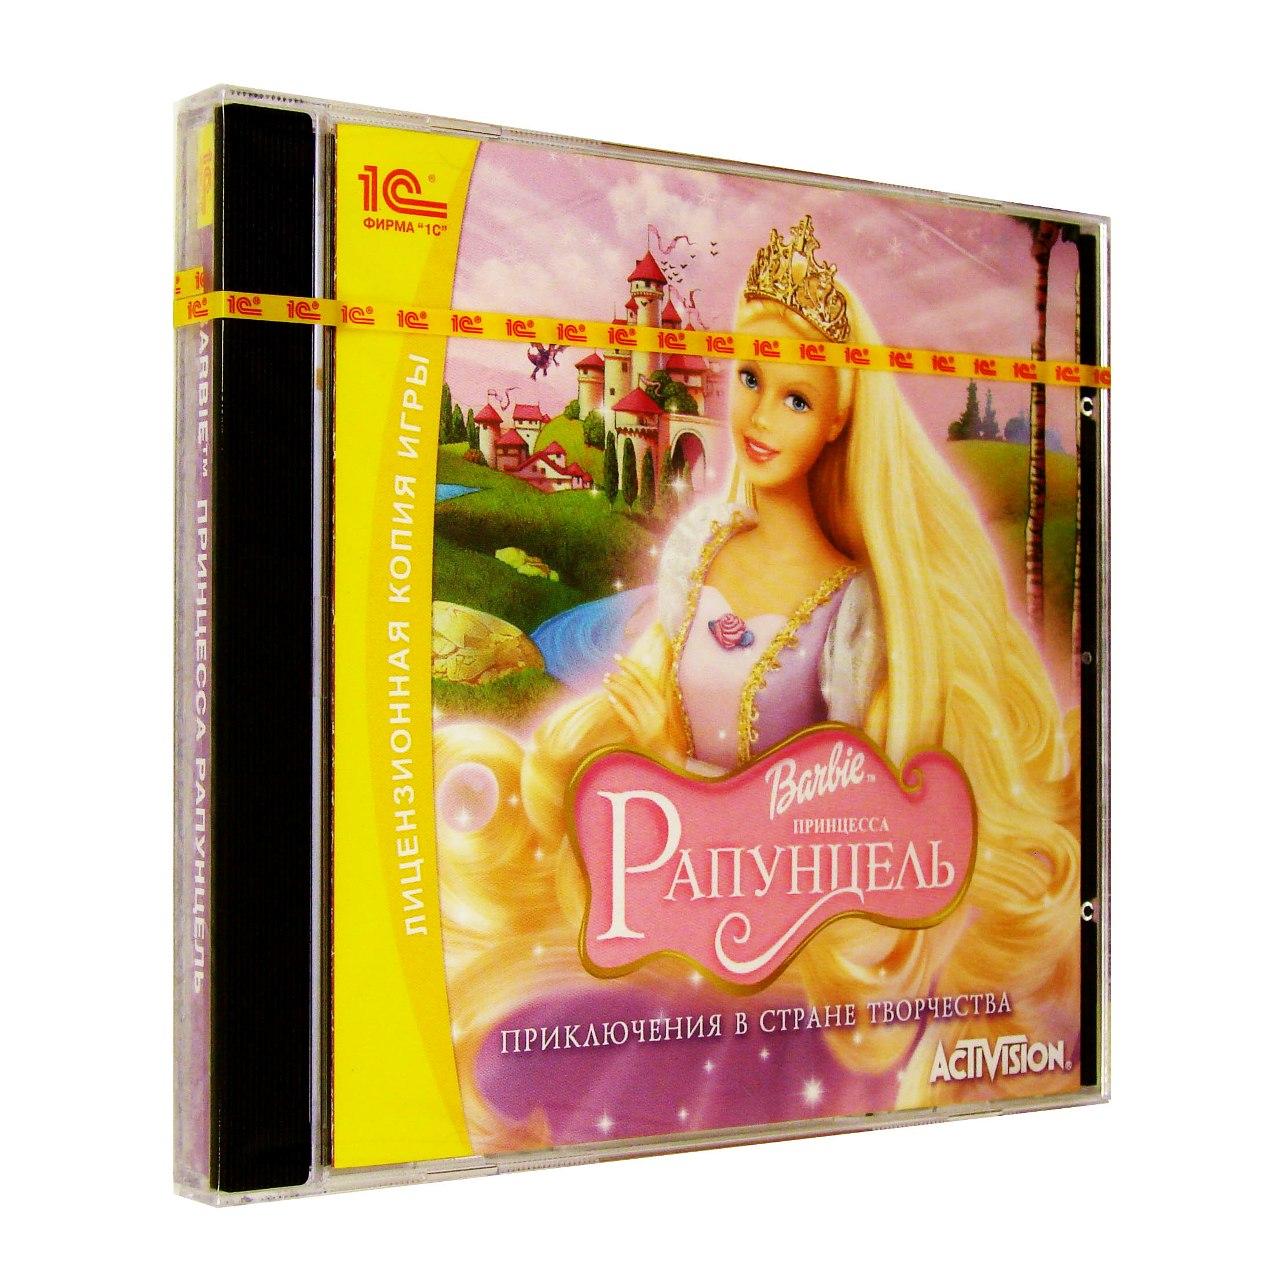 Компьютерный компакт-диск Barbie: Принцесса Рапунцель. Приключения в стране творчества (ПК), фирма "1С", 1CD